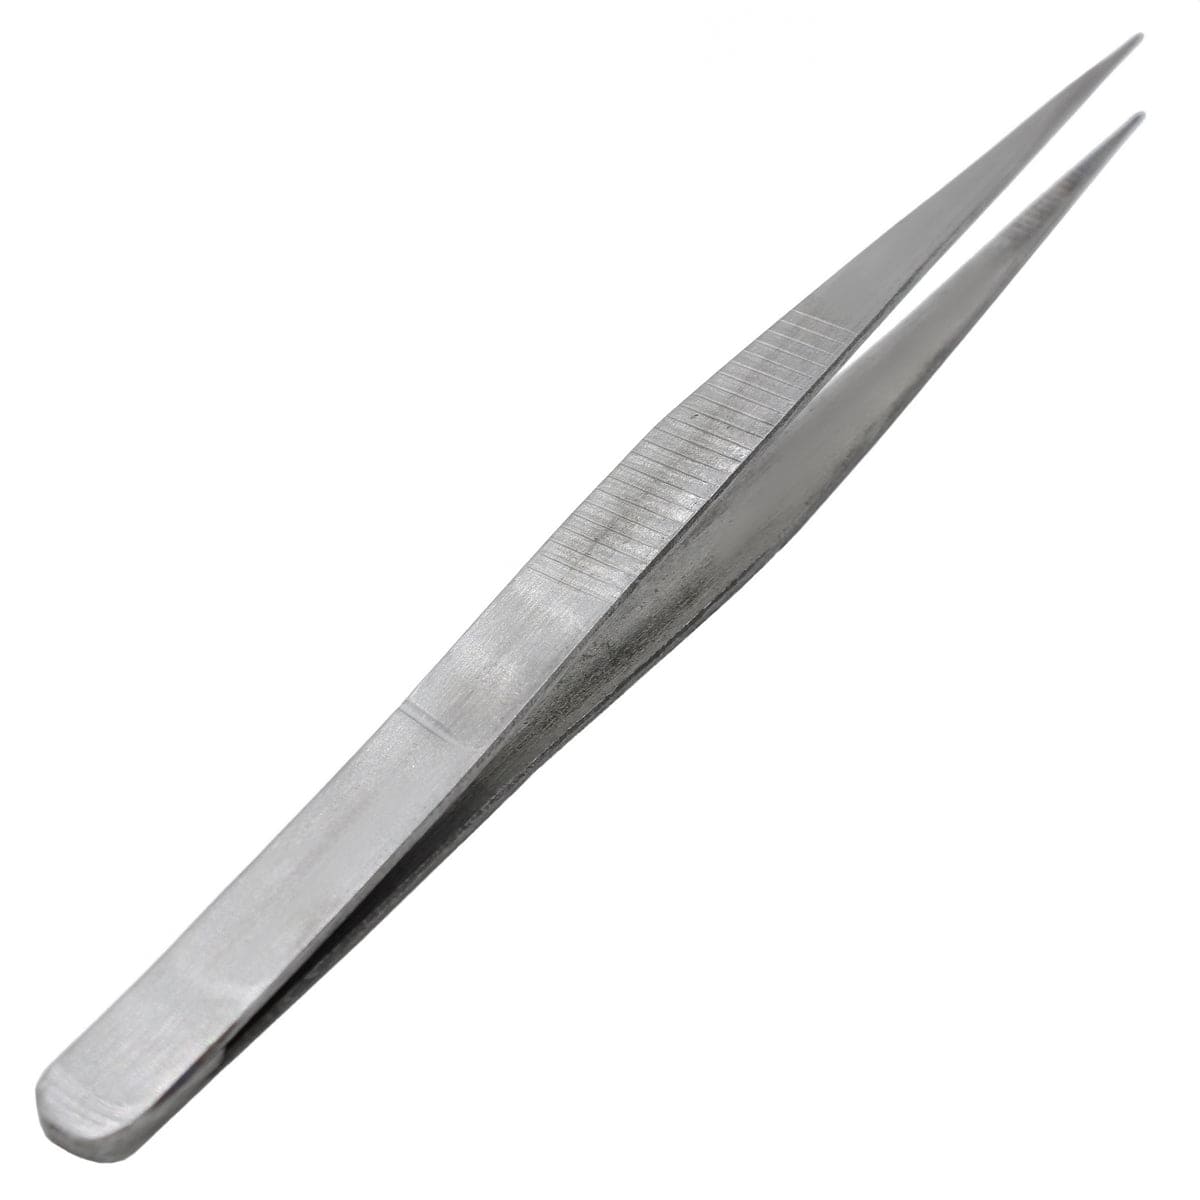 jags-mumbai Art Tool Kit Tweezer Dissecting Forceps 5 Pointed DF5P00